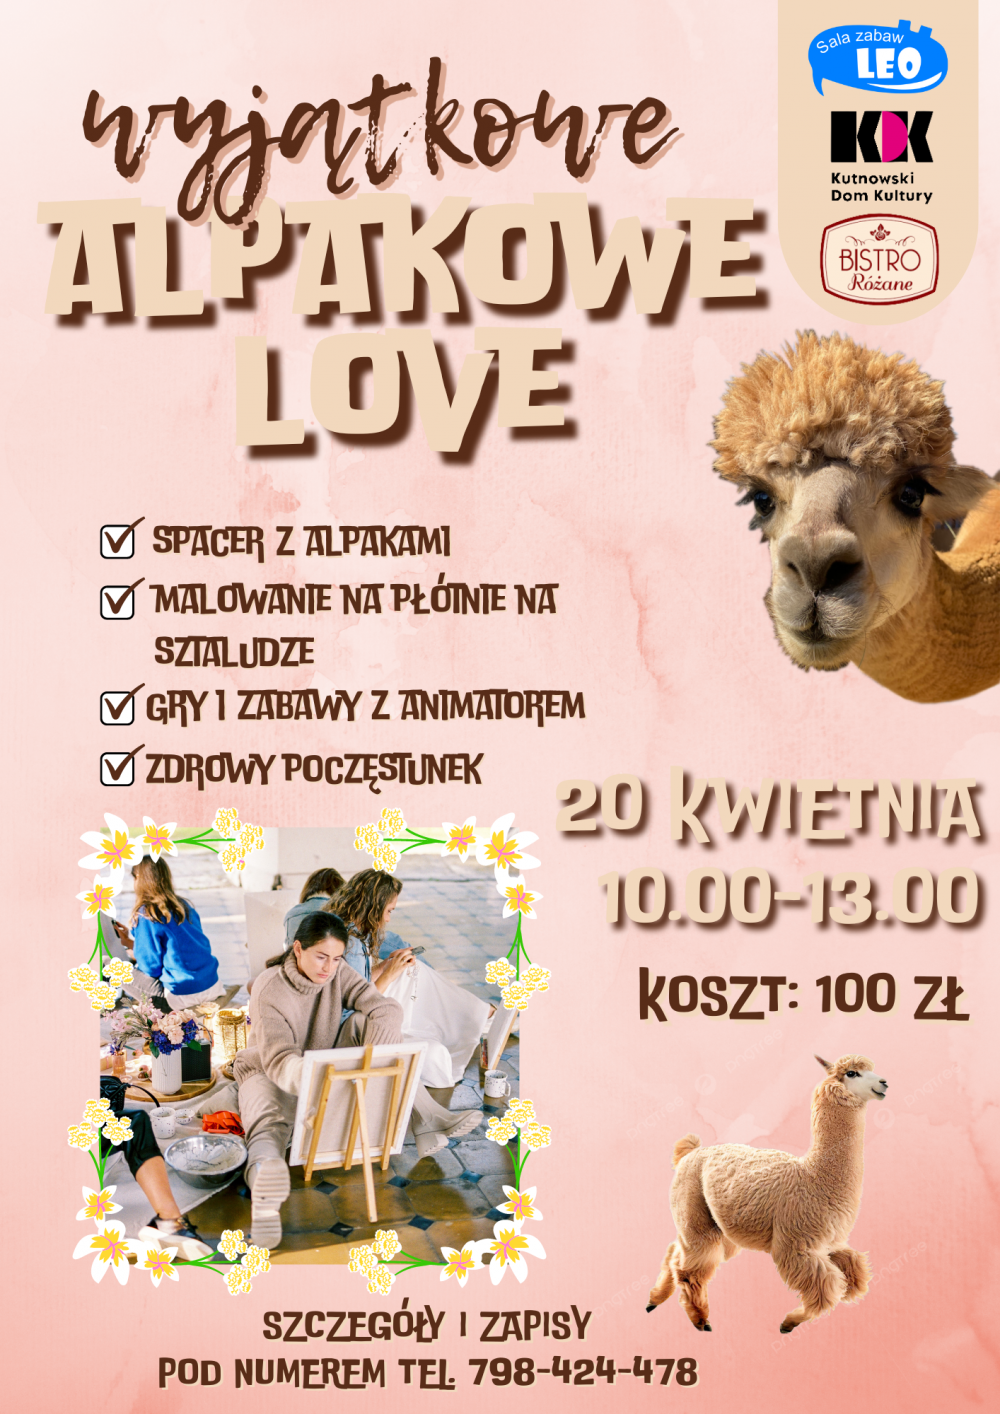 Alpakowe Love plakat wydarzenia dla dzieci